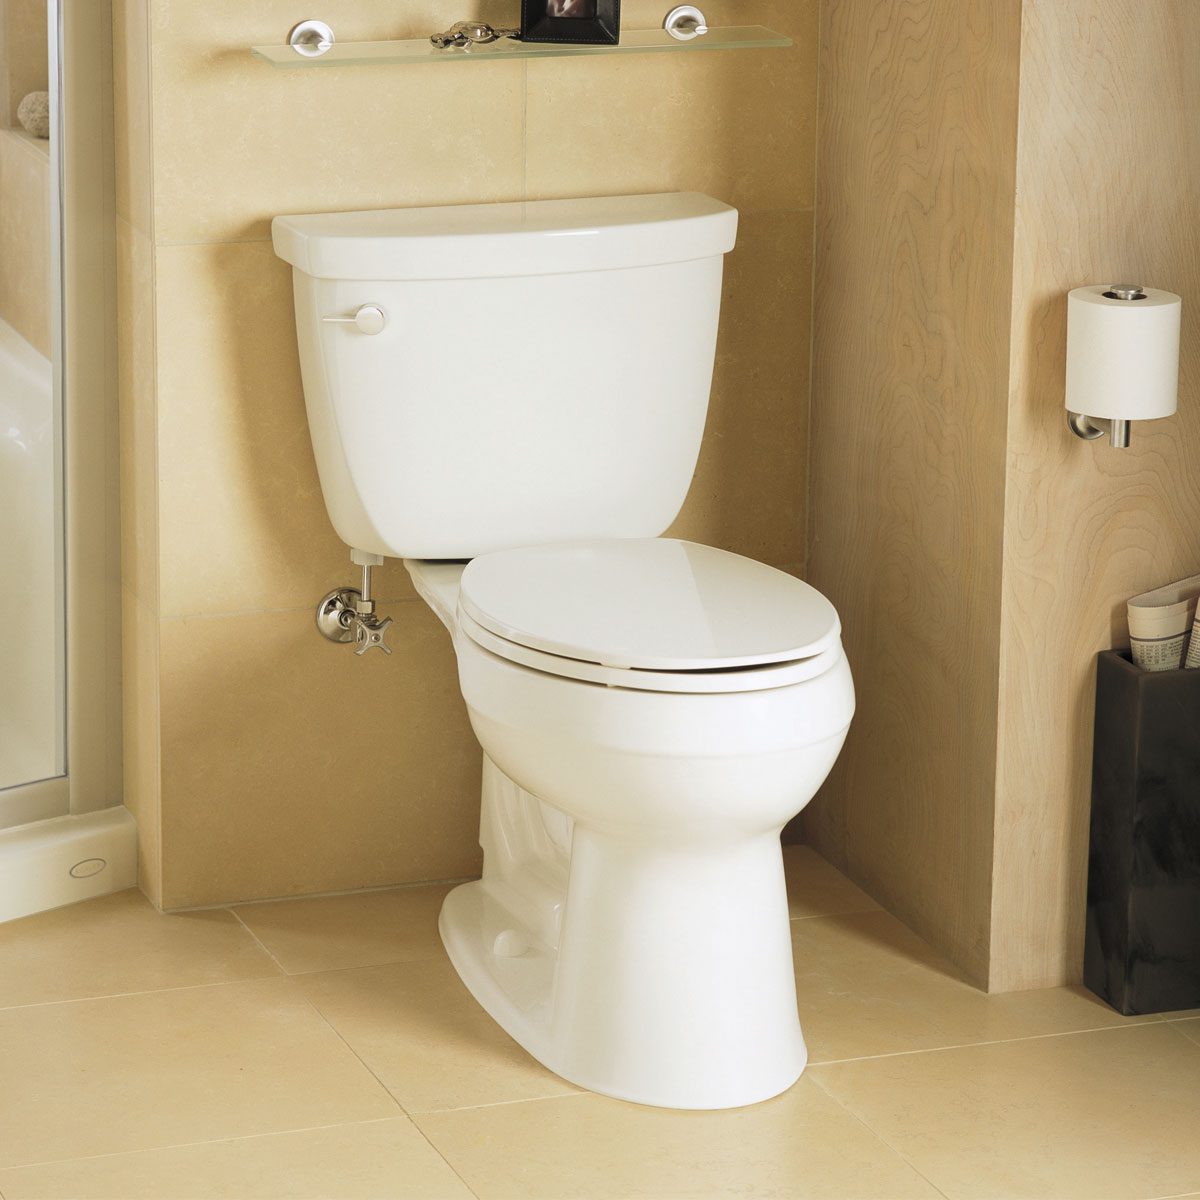 https://www.familyhandyman.com/wp-content/uploads/2019/08/FH11DJA_514_52_001-Kohler-Cimarron-Comfort-Height-Toilet.jpg?fit=680%2C680